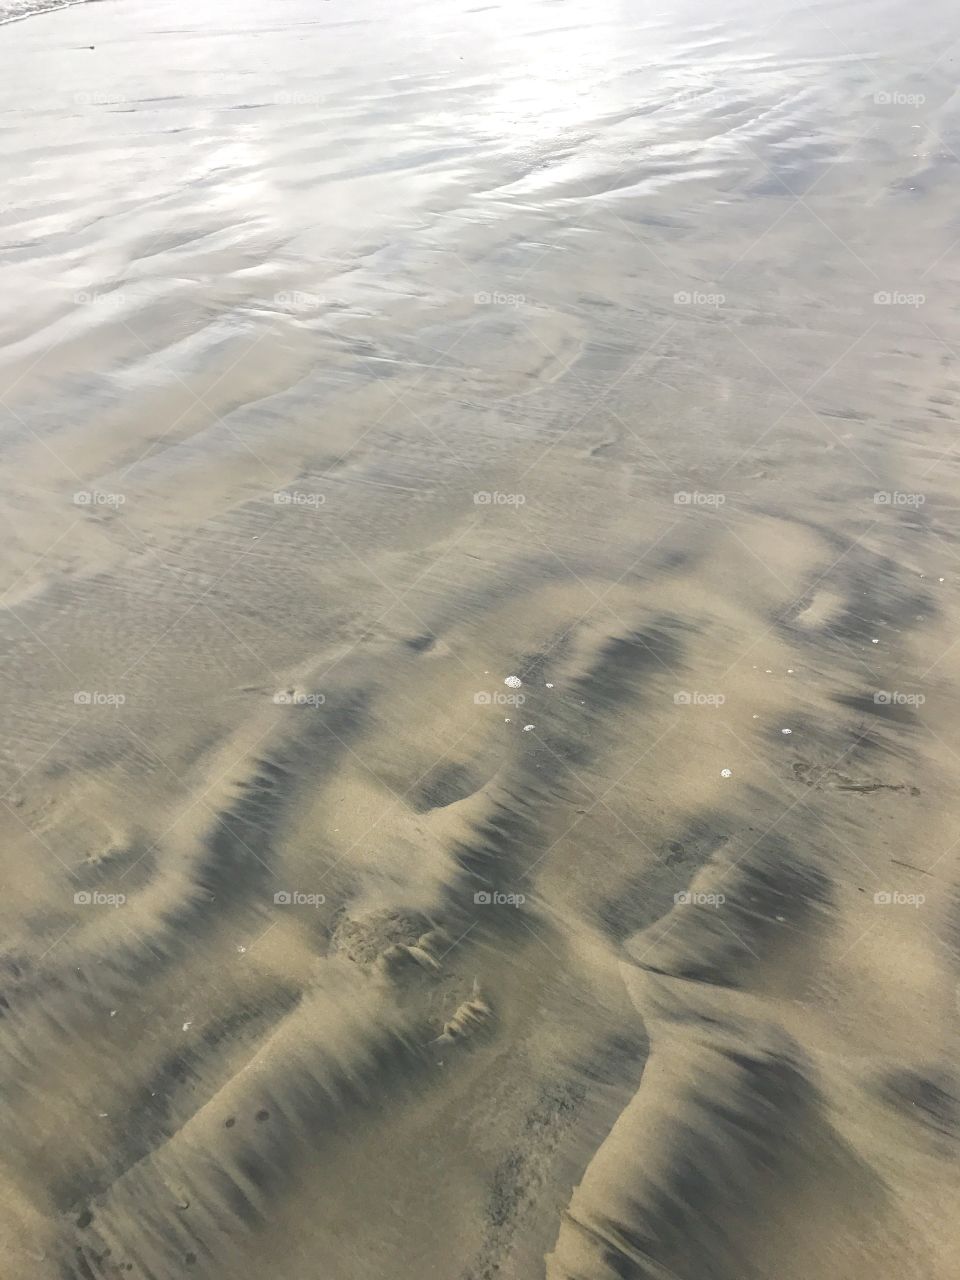 Wet sand on the beach